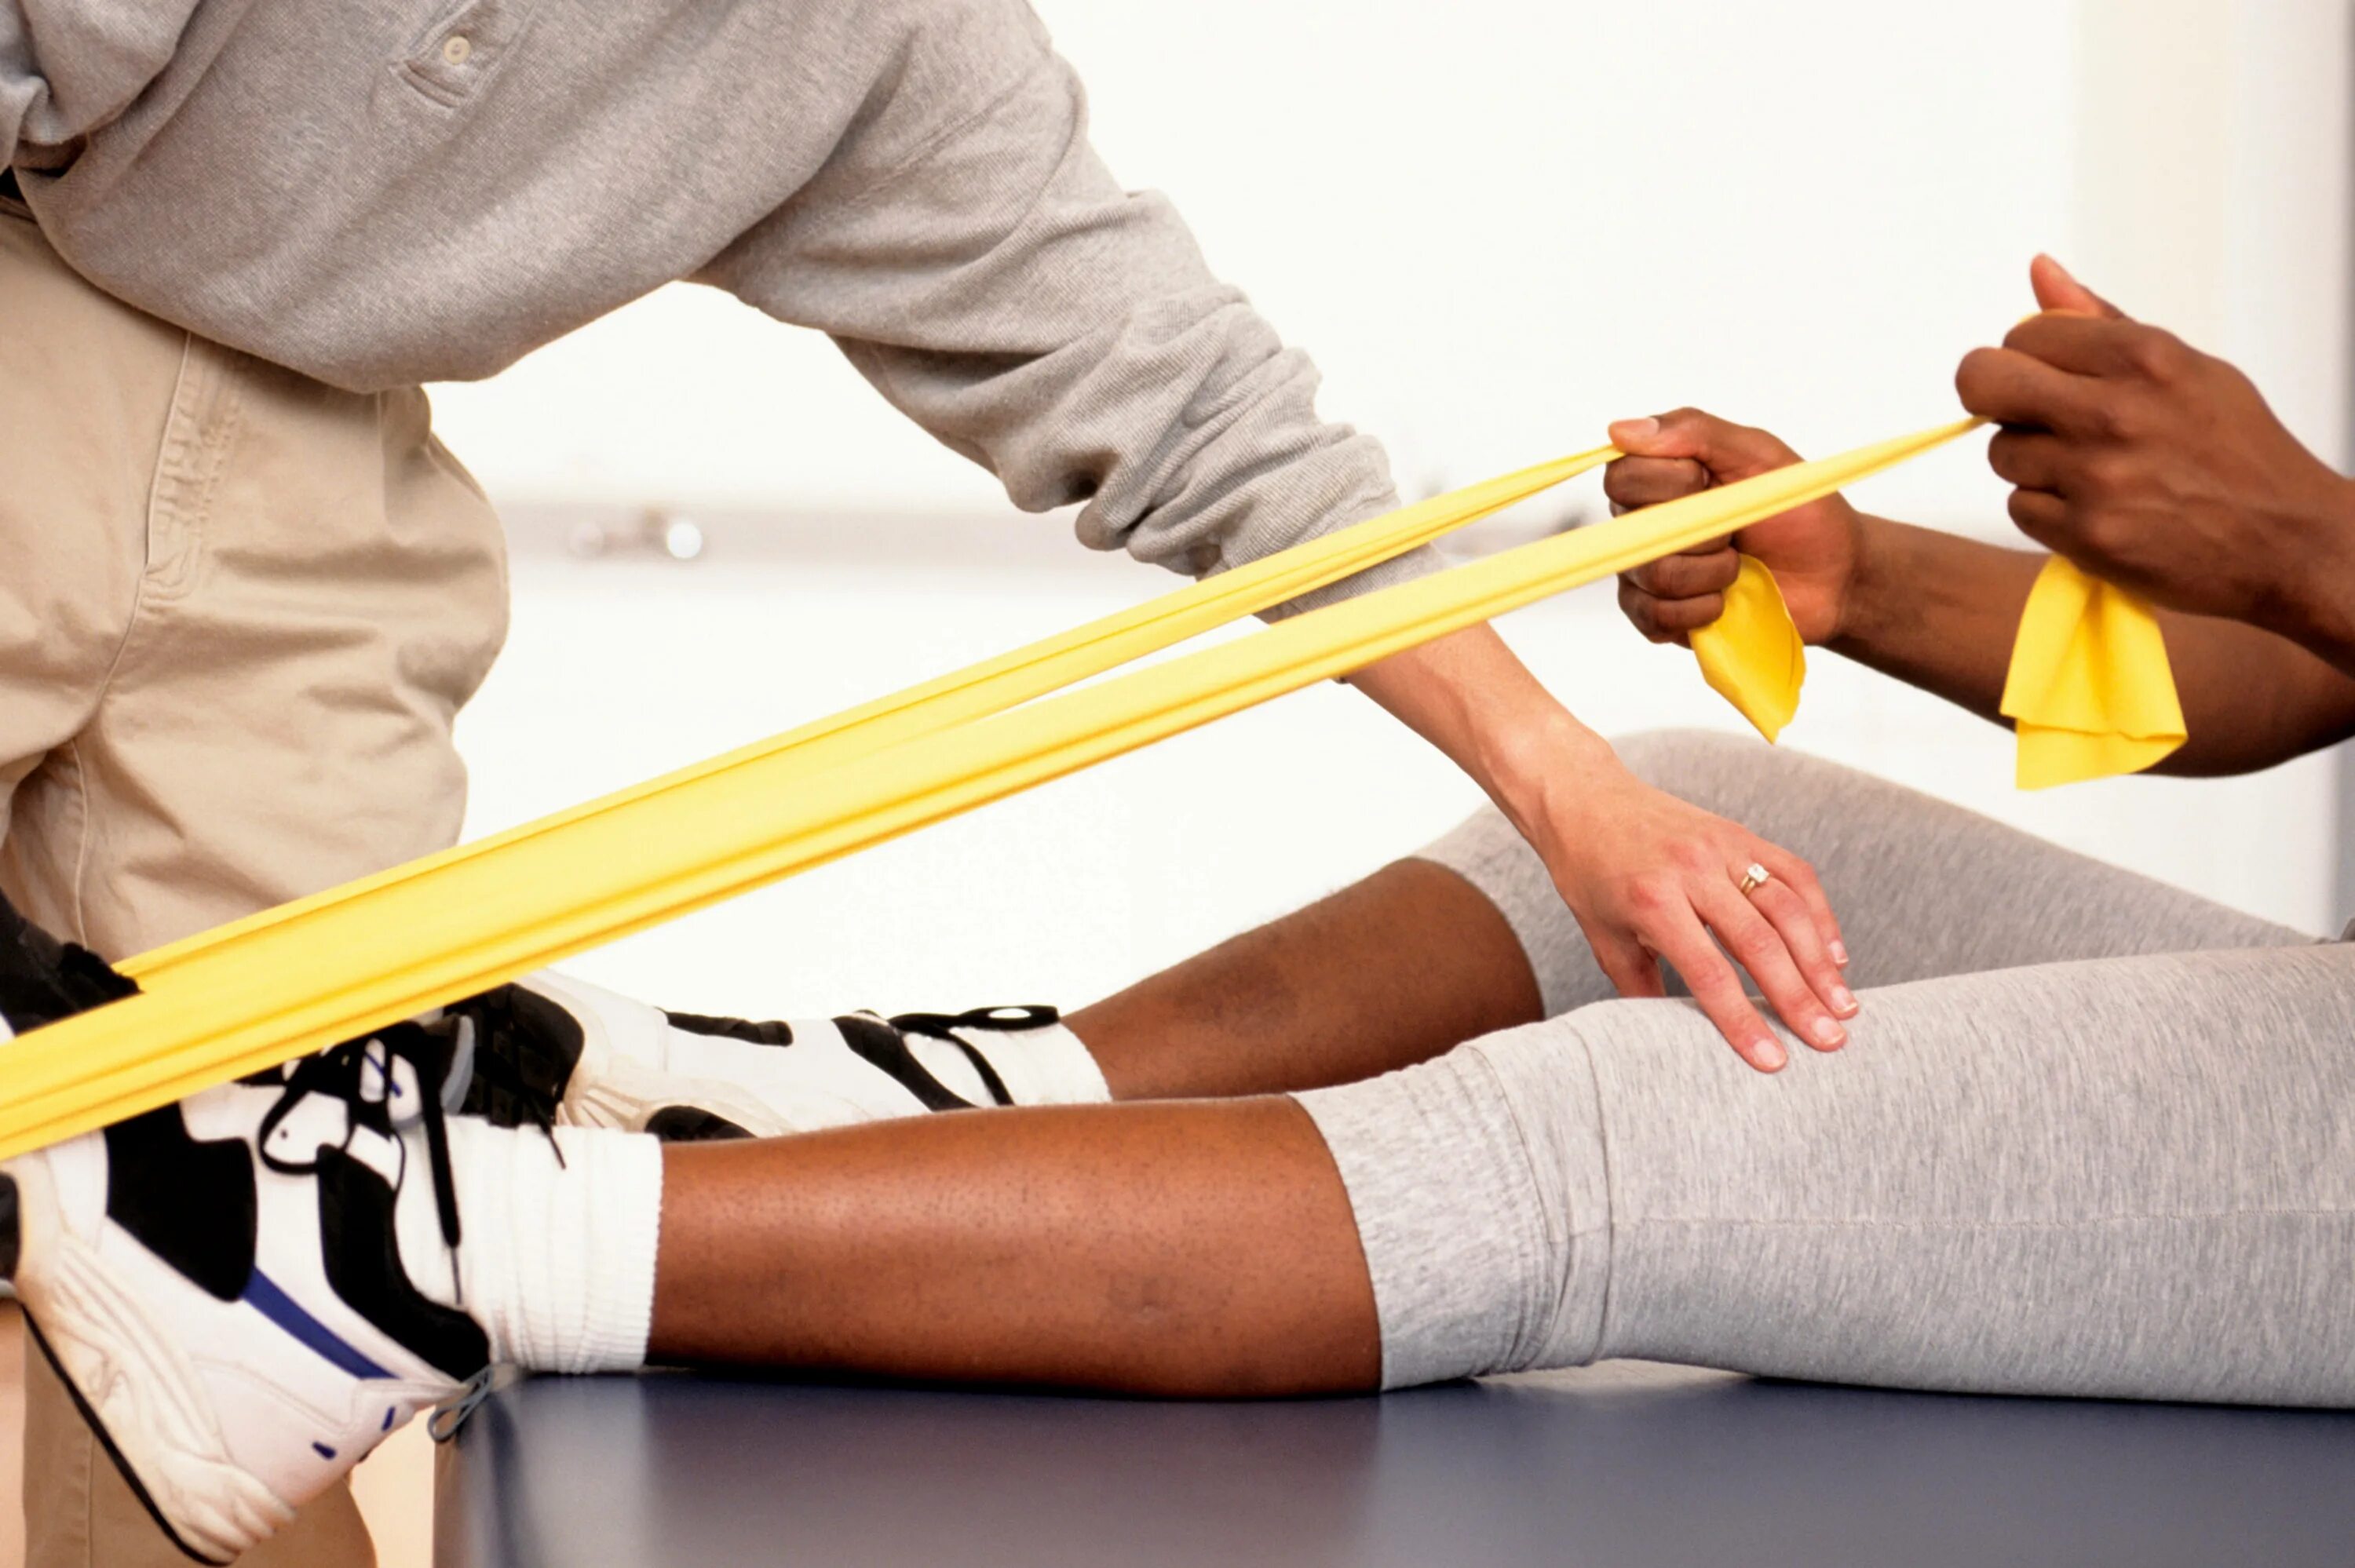 Ограничение движения в коленном суставе. Реабилитация после перелома. Резинка для разработки коленного сустава. Резинки для реабилитации после эндопротезирования. Реабилитация при переломах.